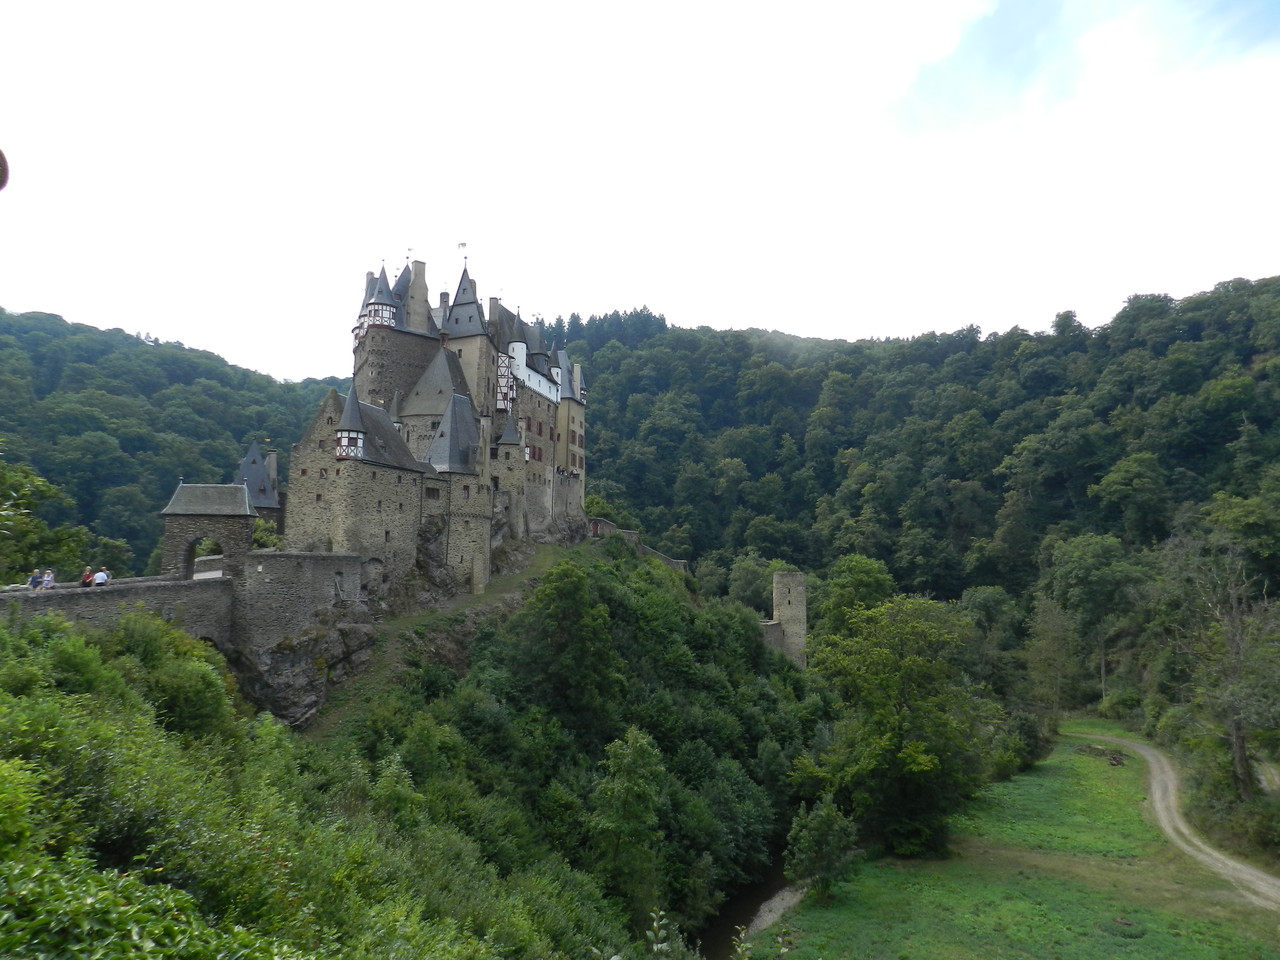 Burg Eltz (Vorlage für Burg Mentz aus "Jennas Bestimmung"